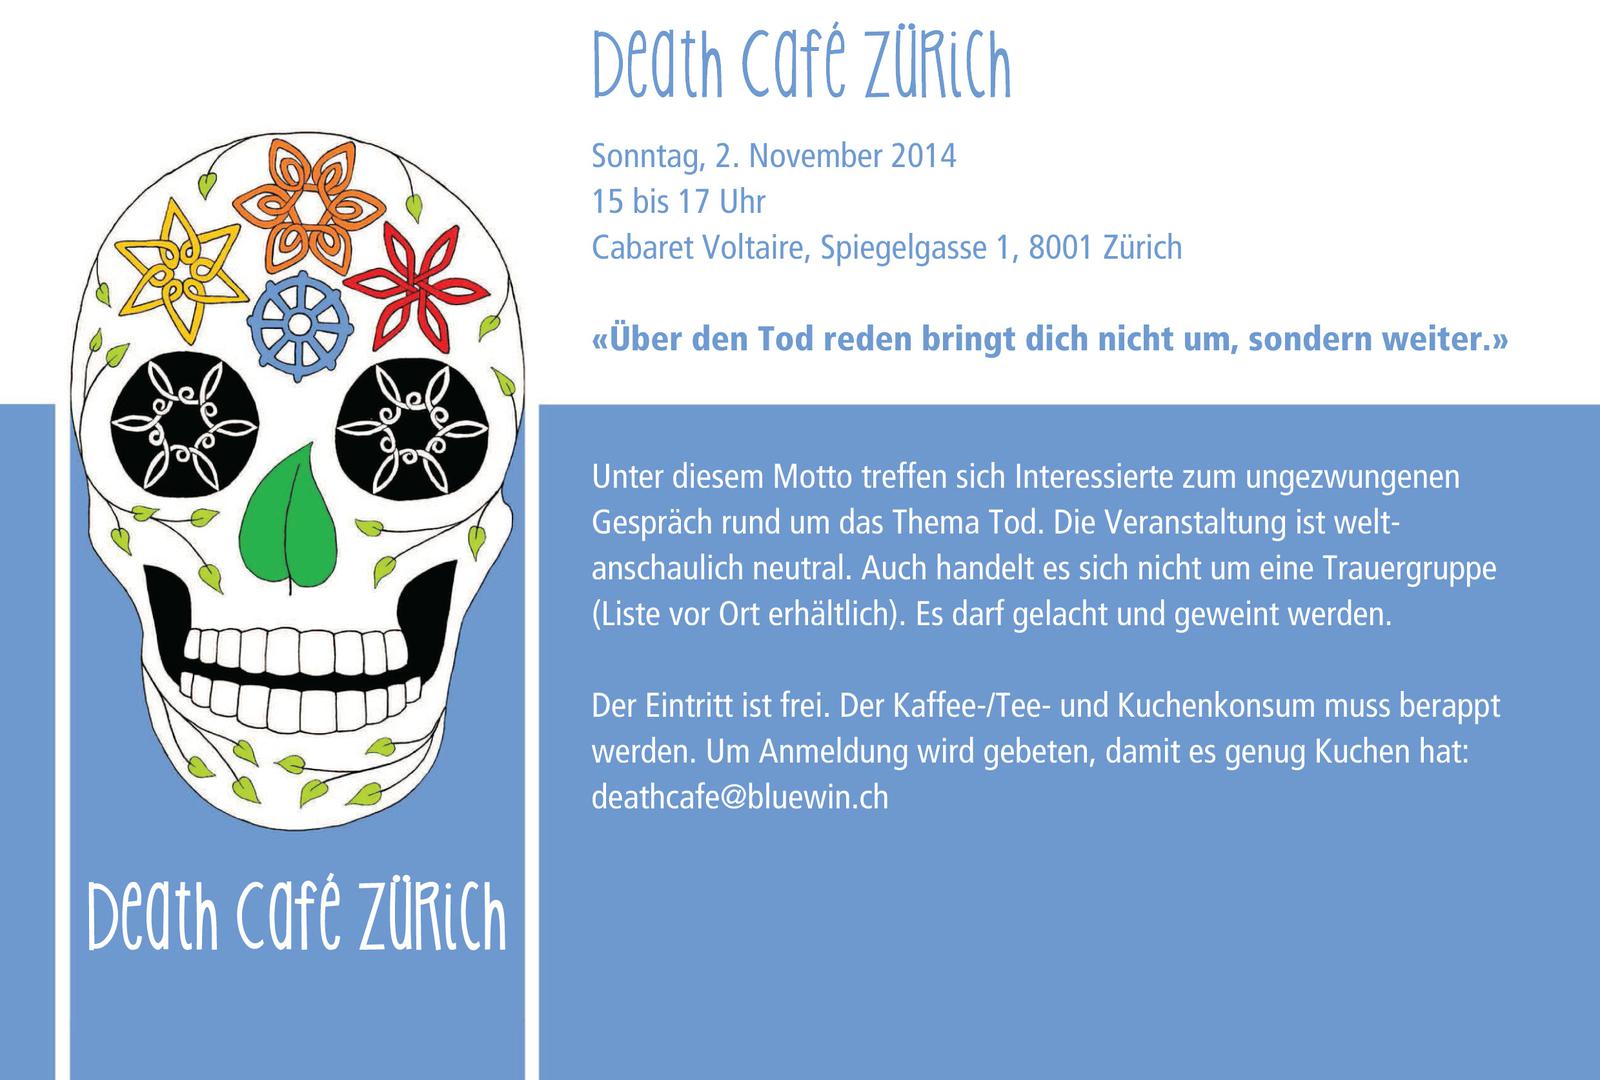 Death Cafe Zürich